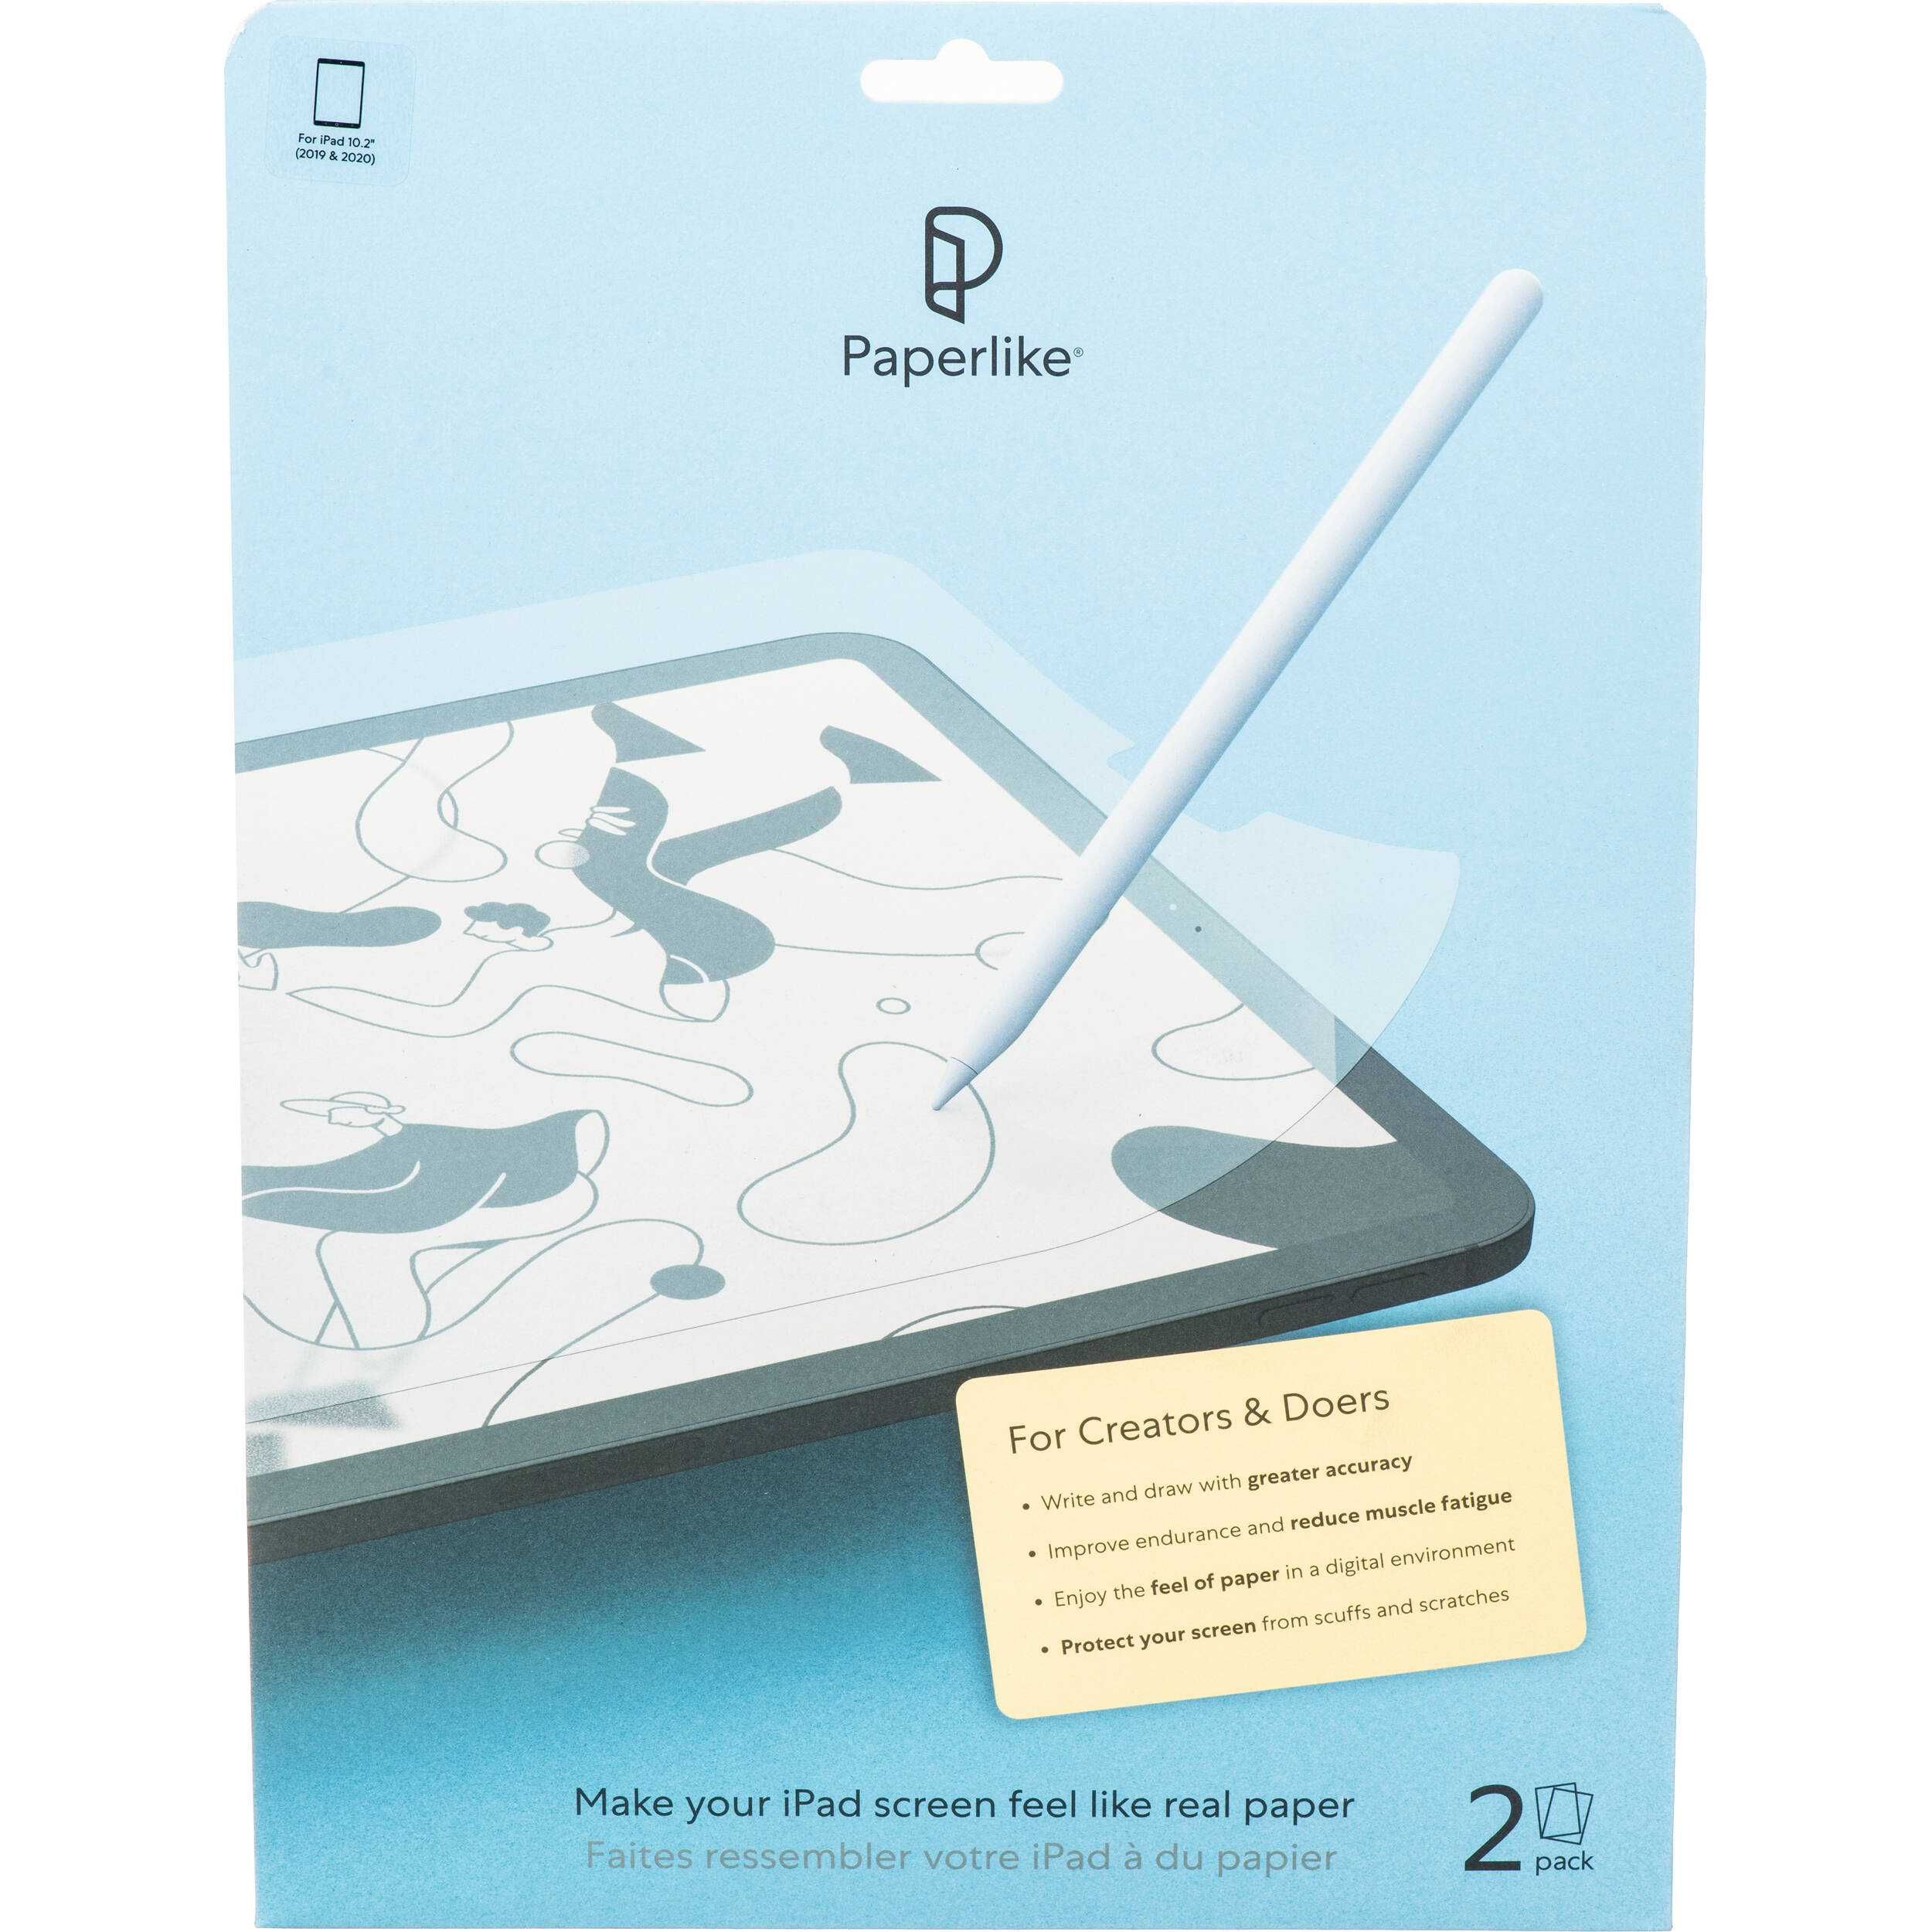 Paperlike (пленка на iPad c ощущениями бумаги)